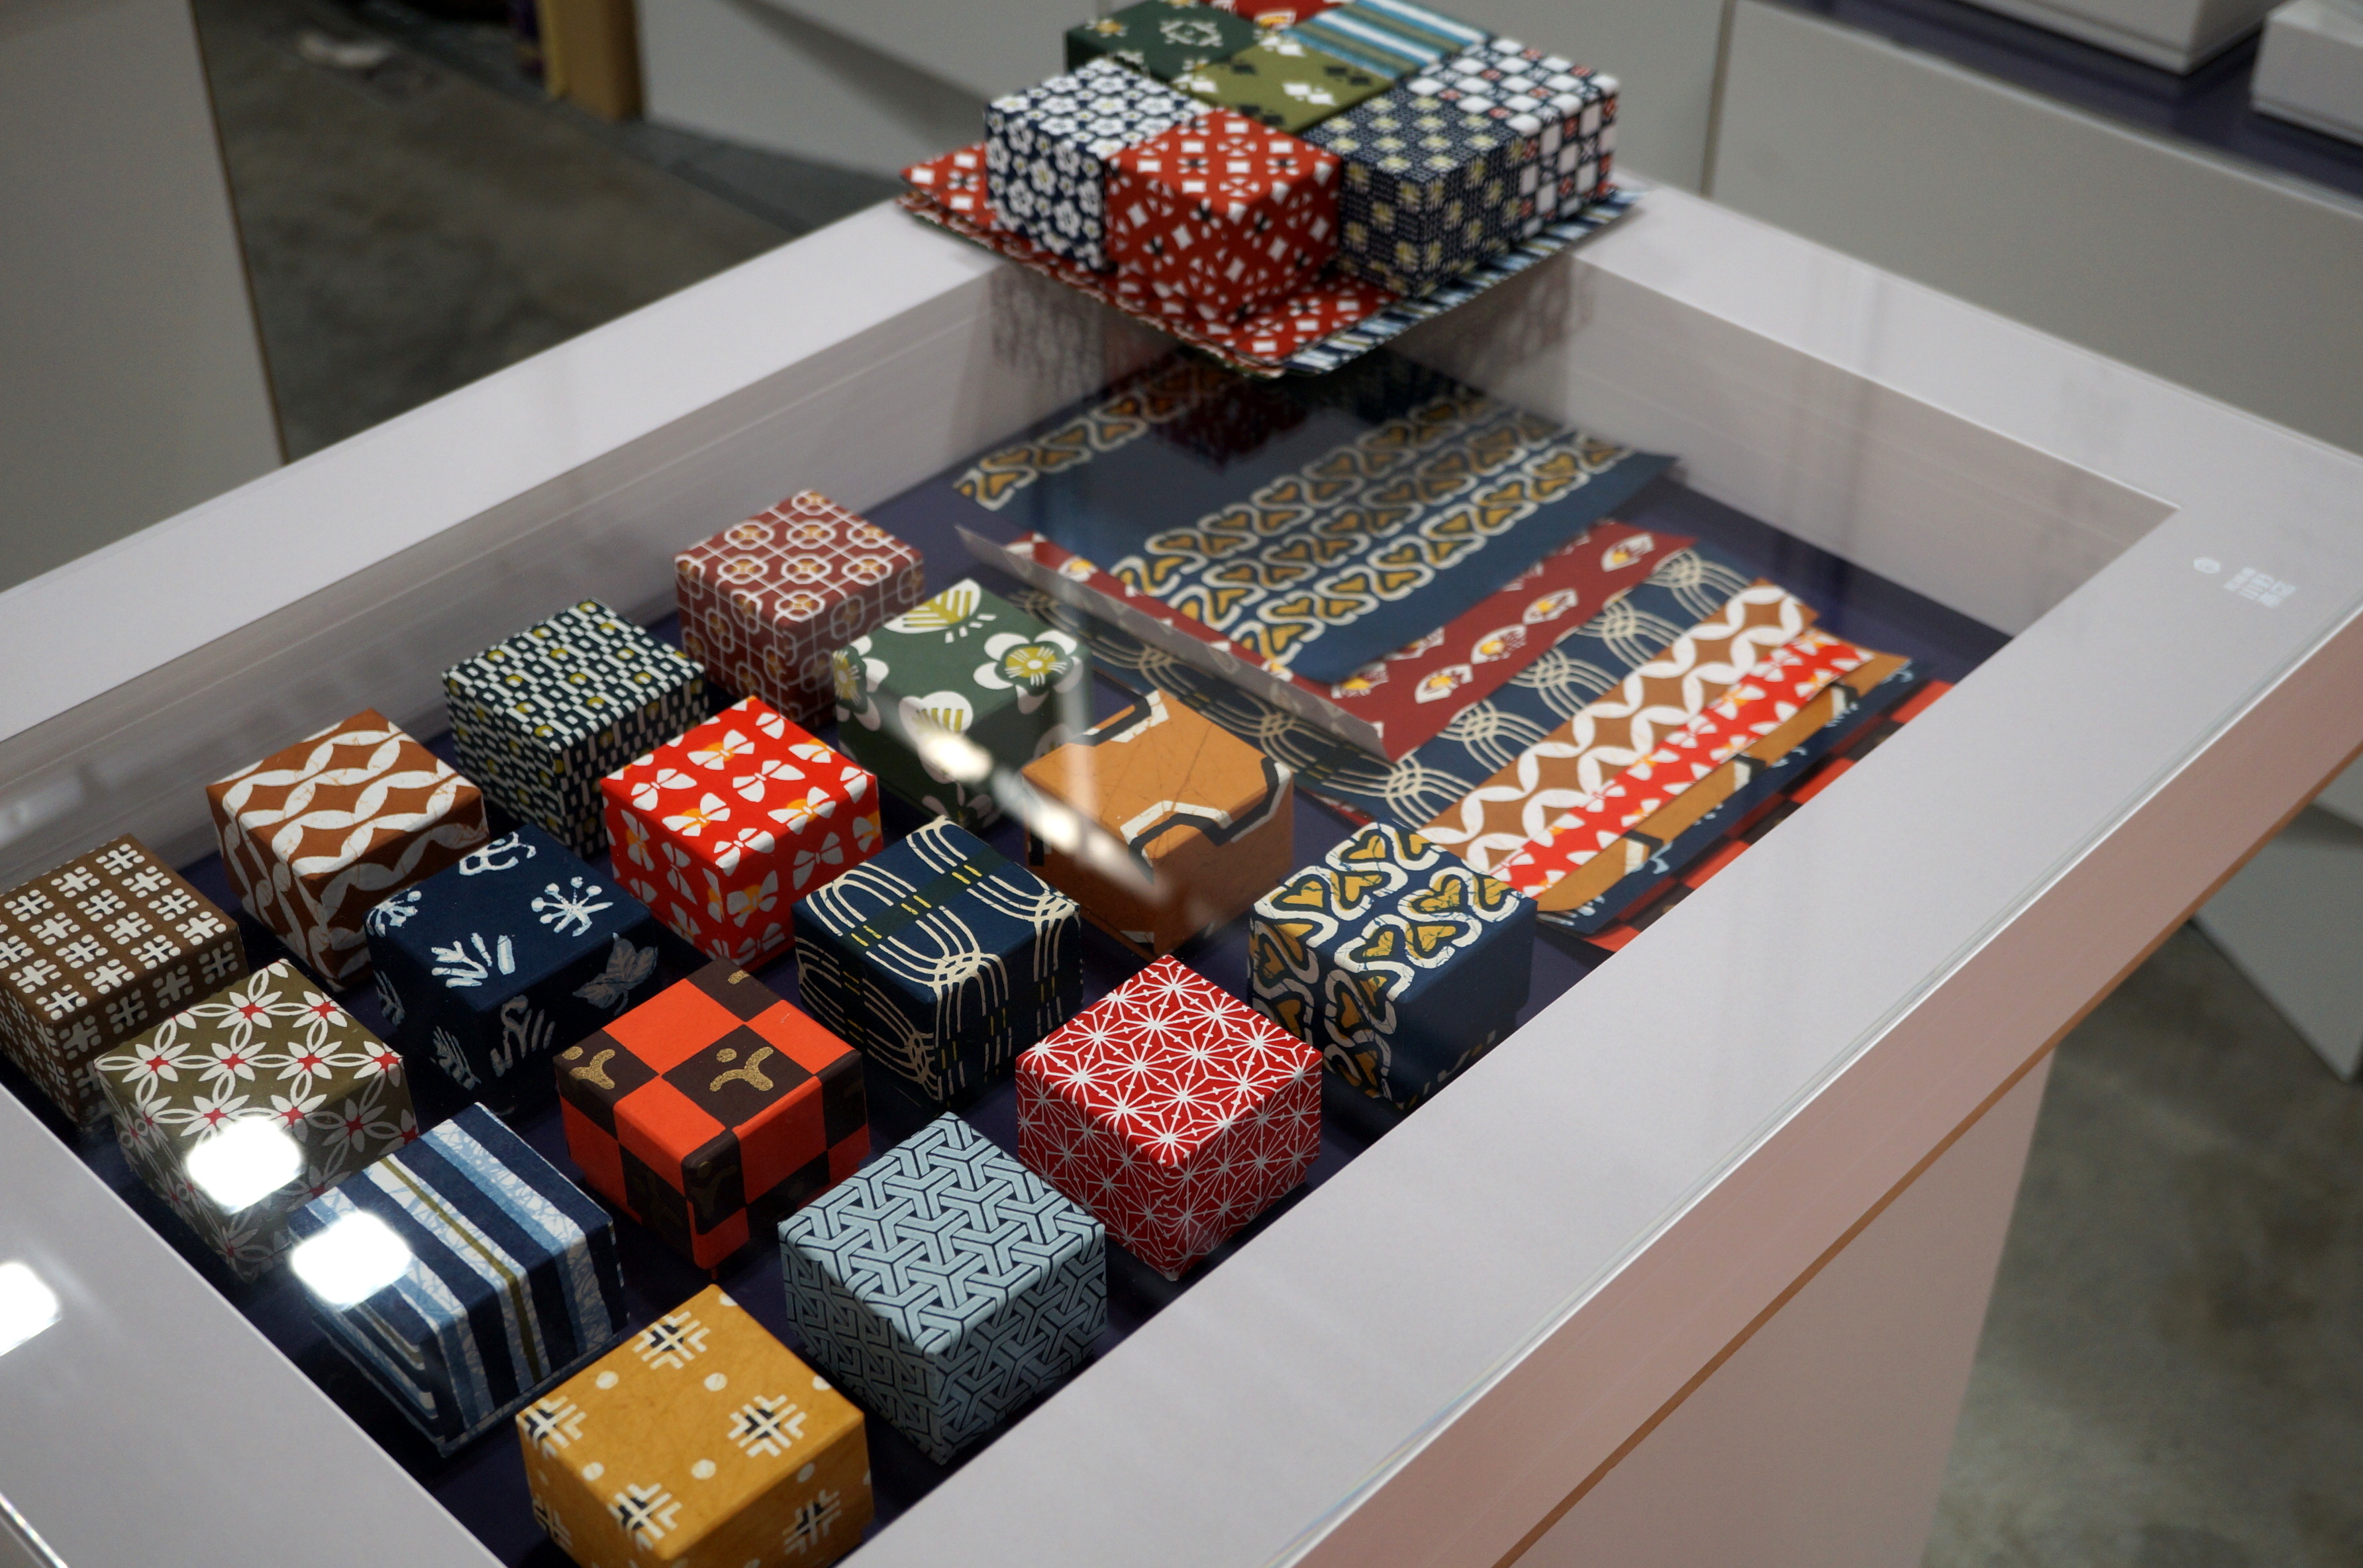 東京ビッグサイトのパッケージデザイン展に出展した型染め民芸紙を使った小さな貼り箱